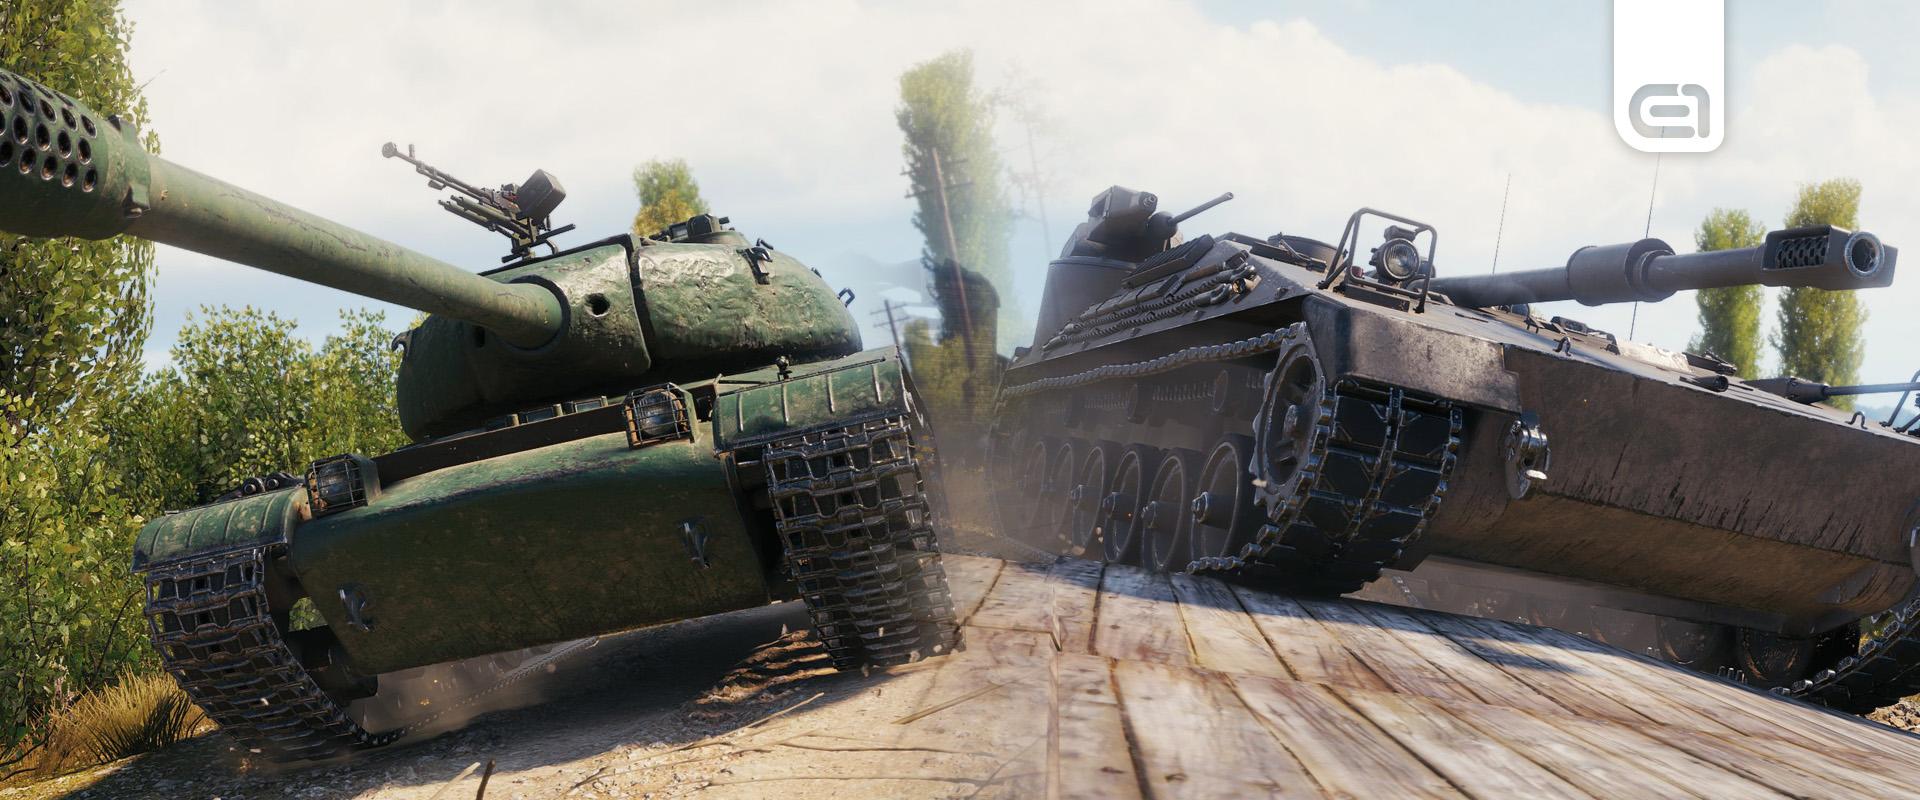 Az új Battle Pass járművek paramétereit máris megváltoztatták